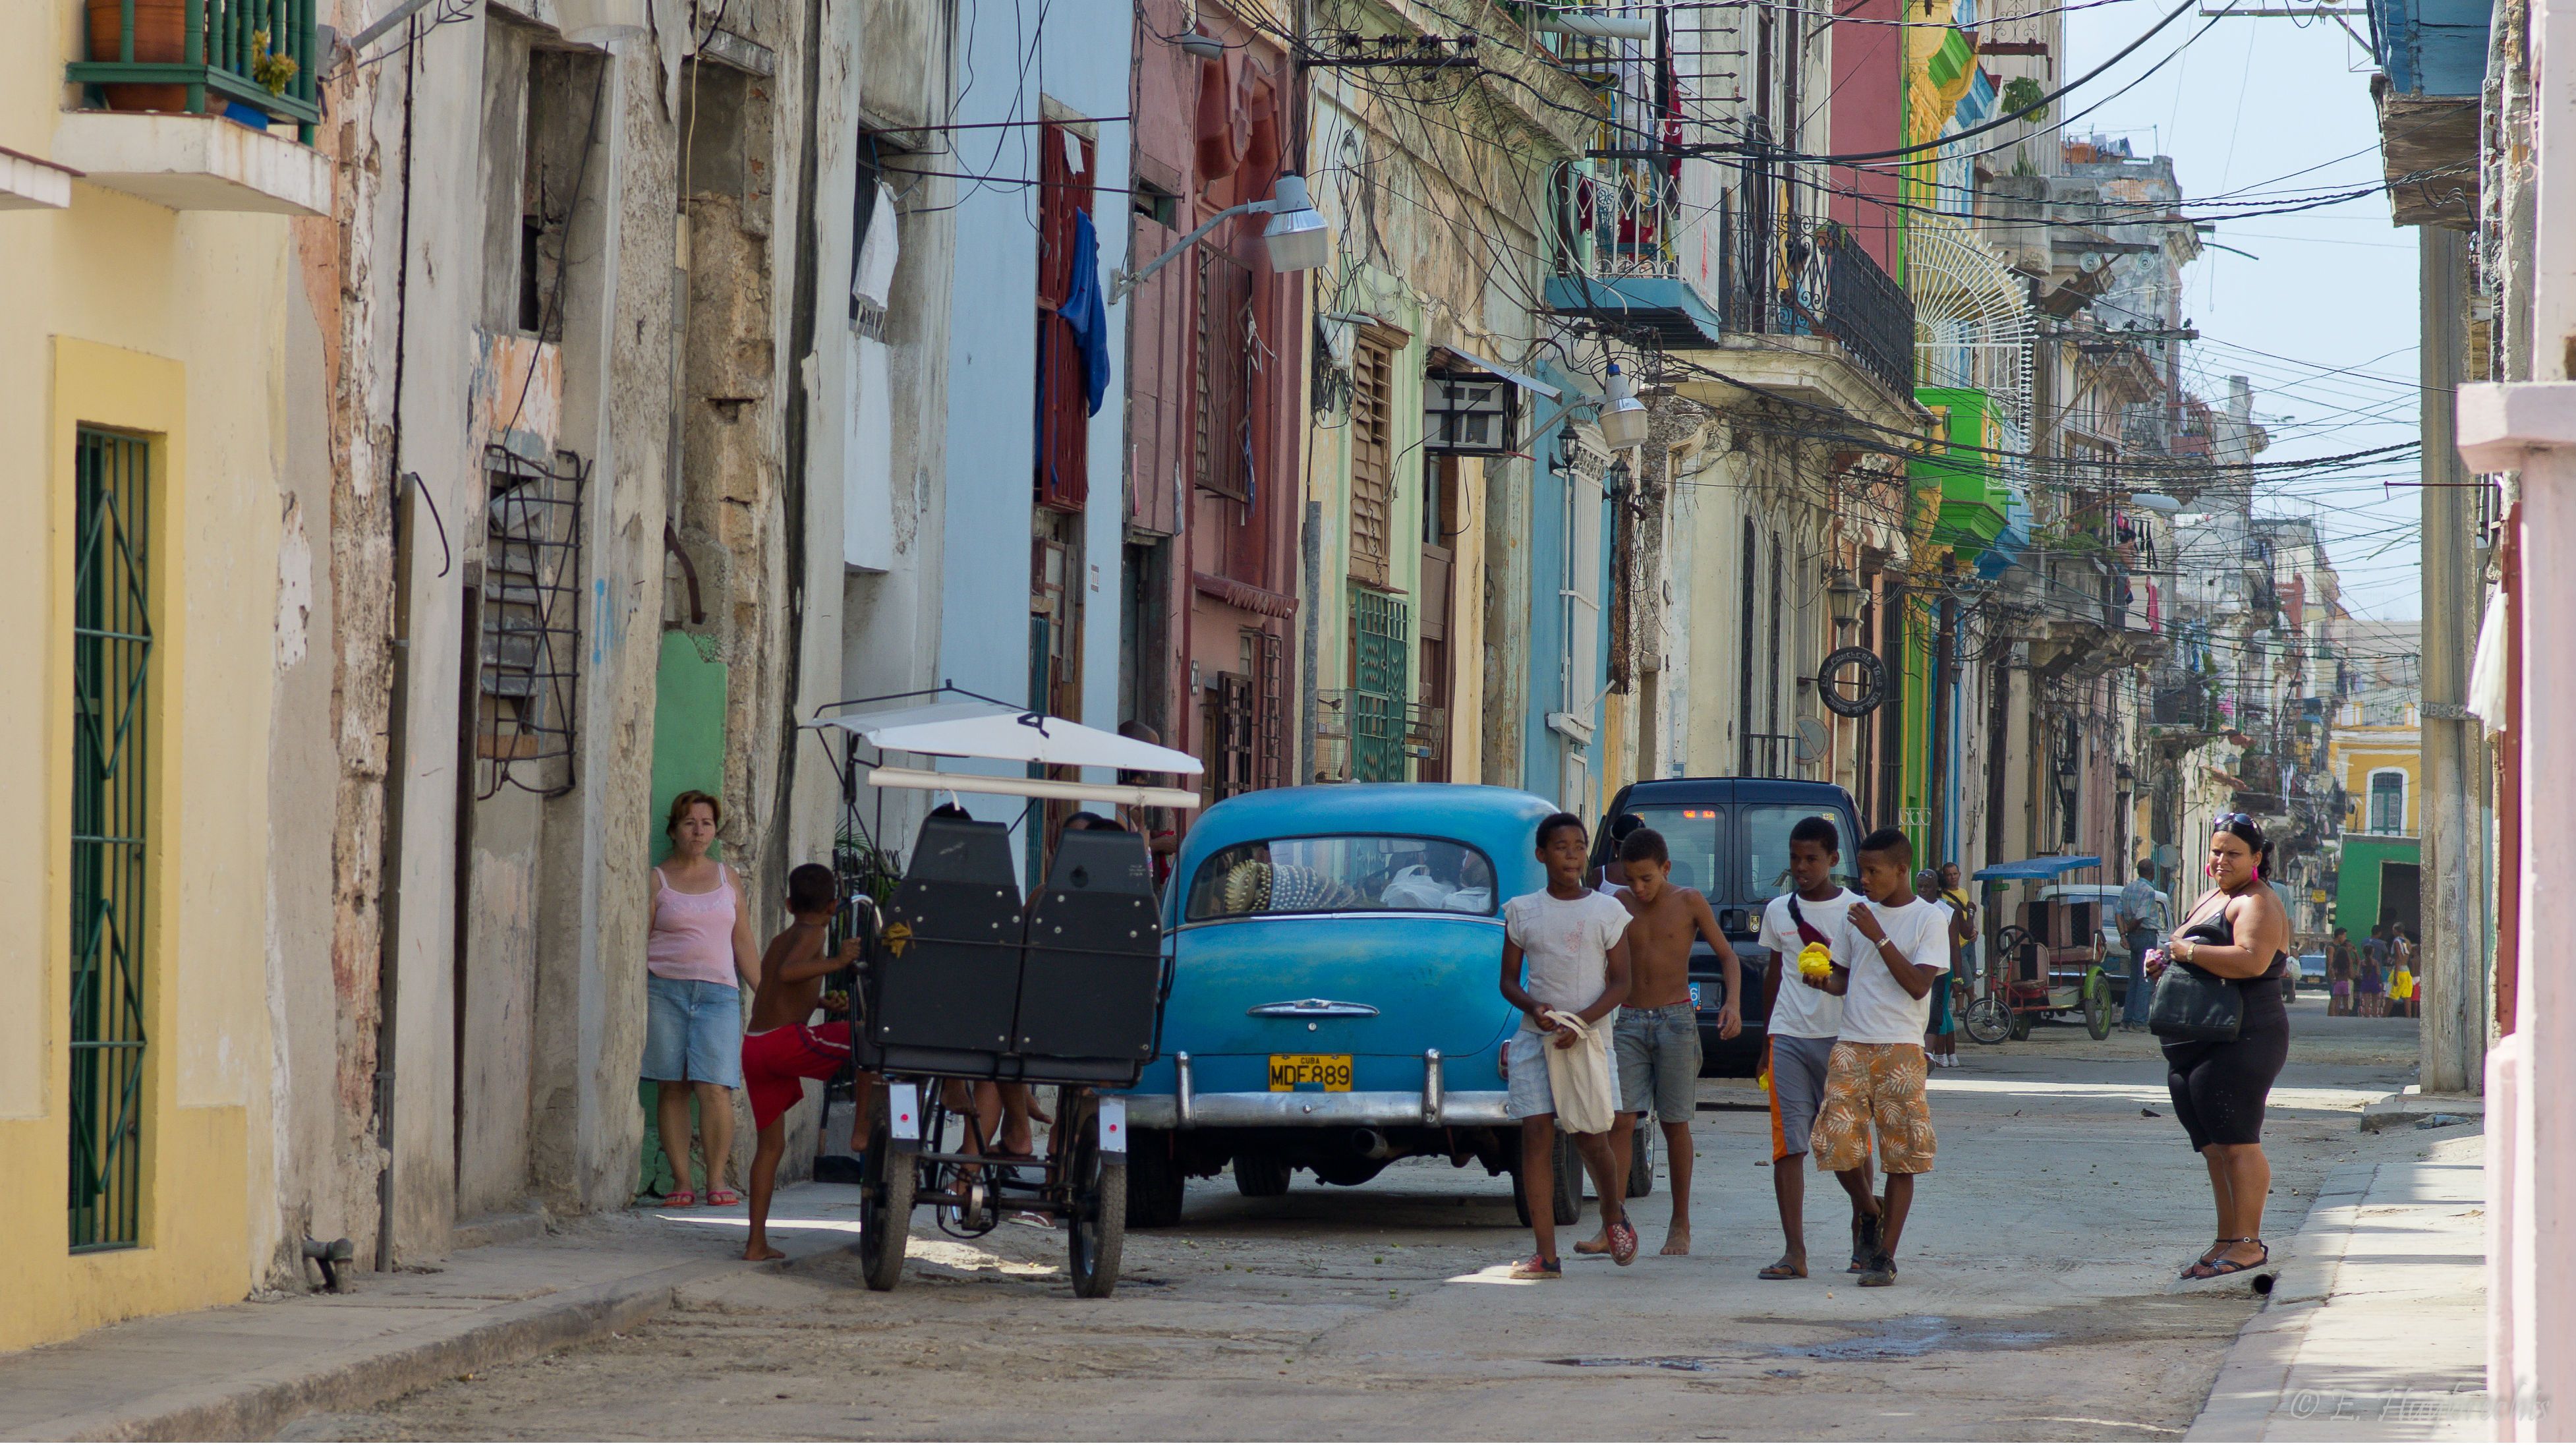 Si tens problemes de parella: vés a Cuba